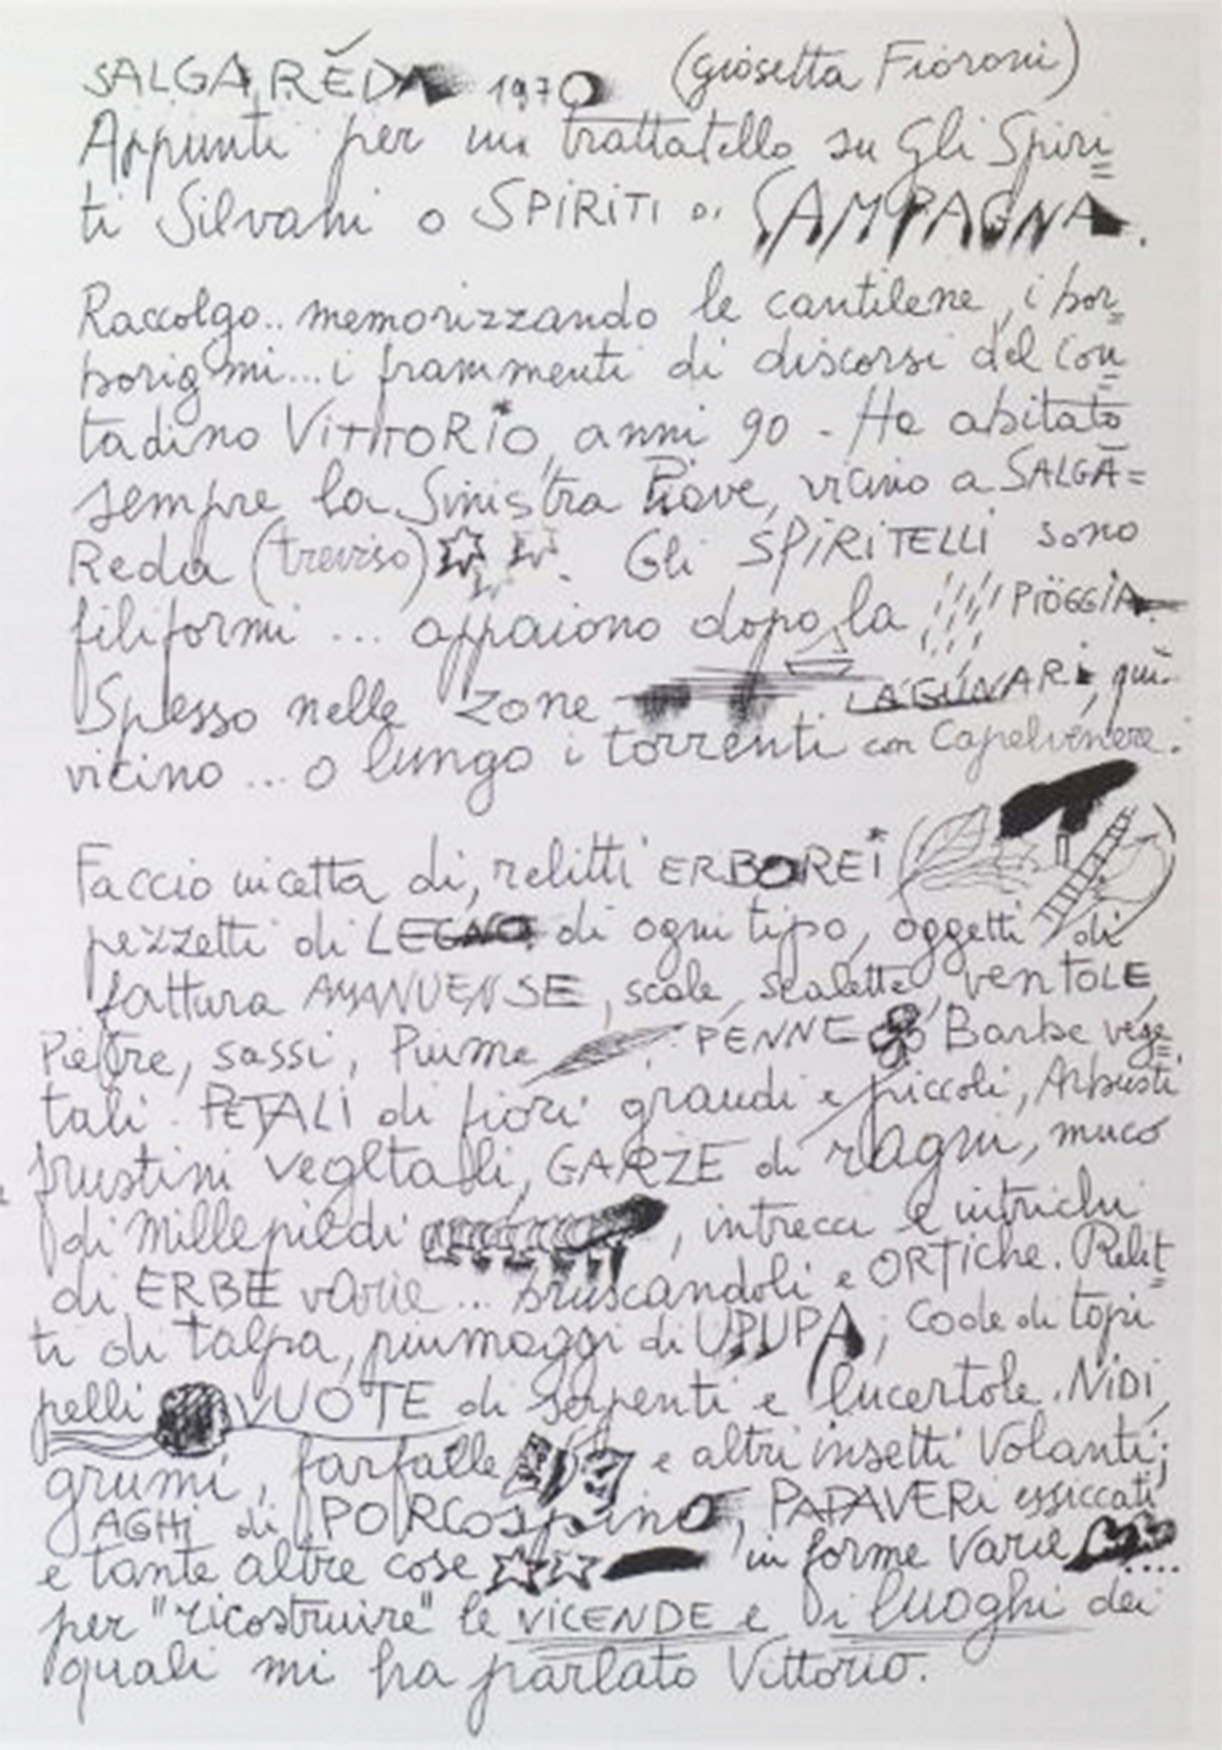   Giosetta Fioroni, Spiriti Silvani, appunti calligrafici, 1970